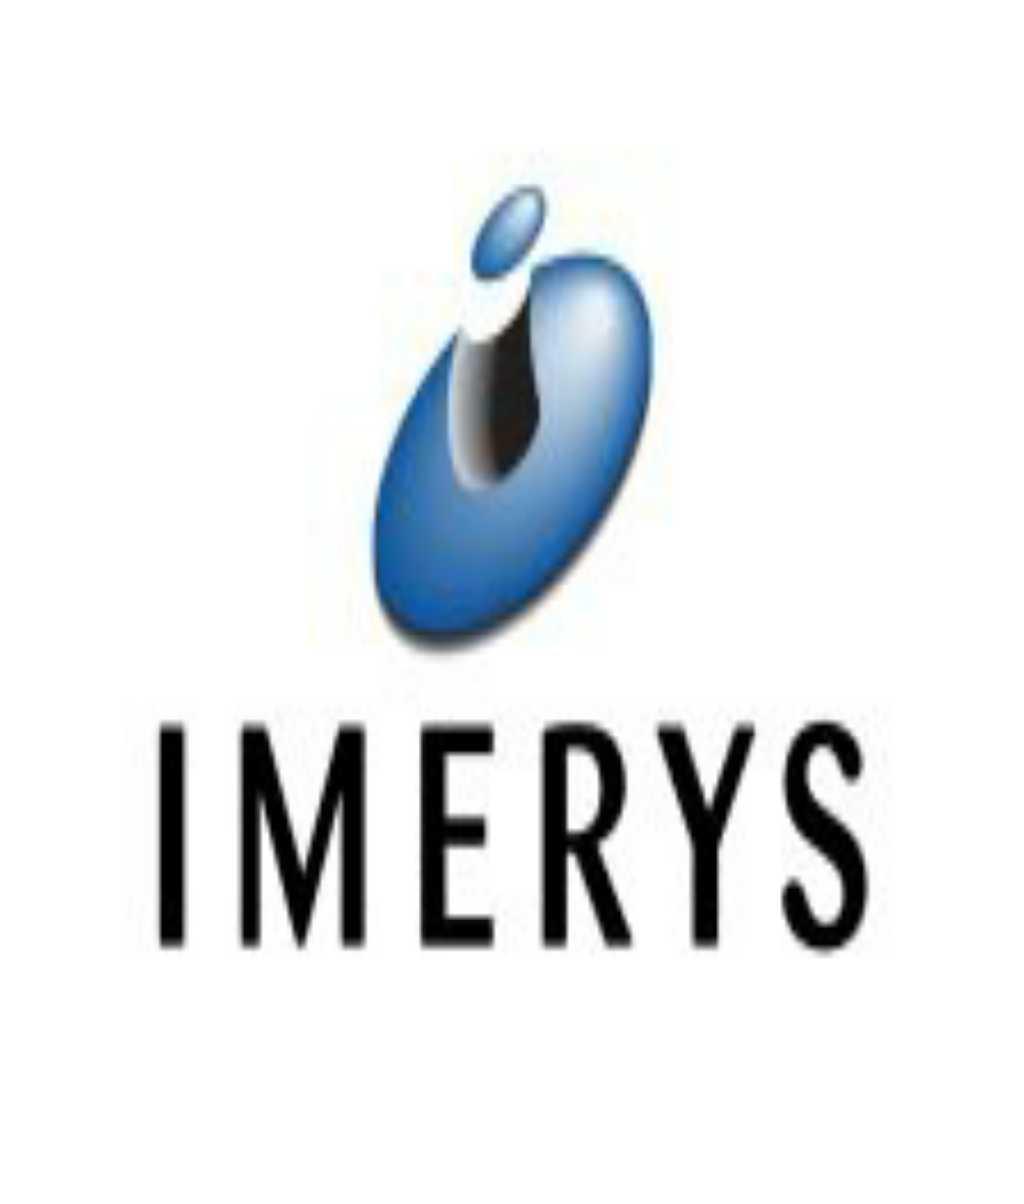 Imerys Performance & Filtration Minerals Pvt. Ltd